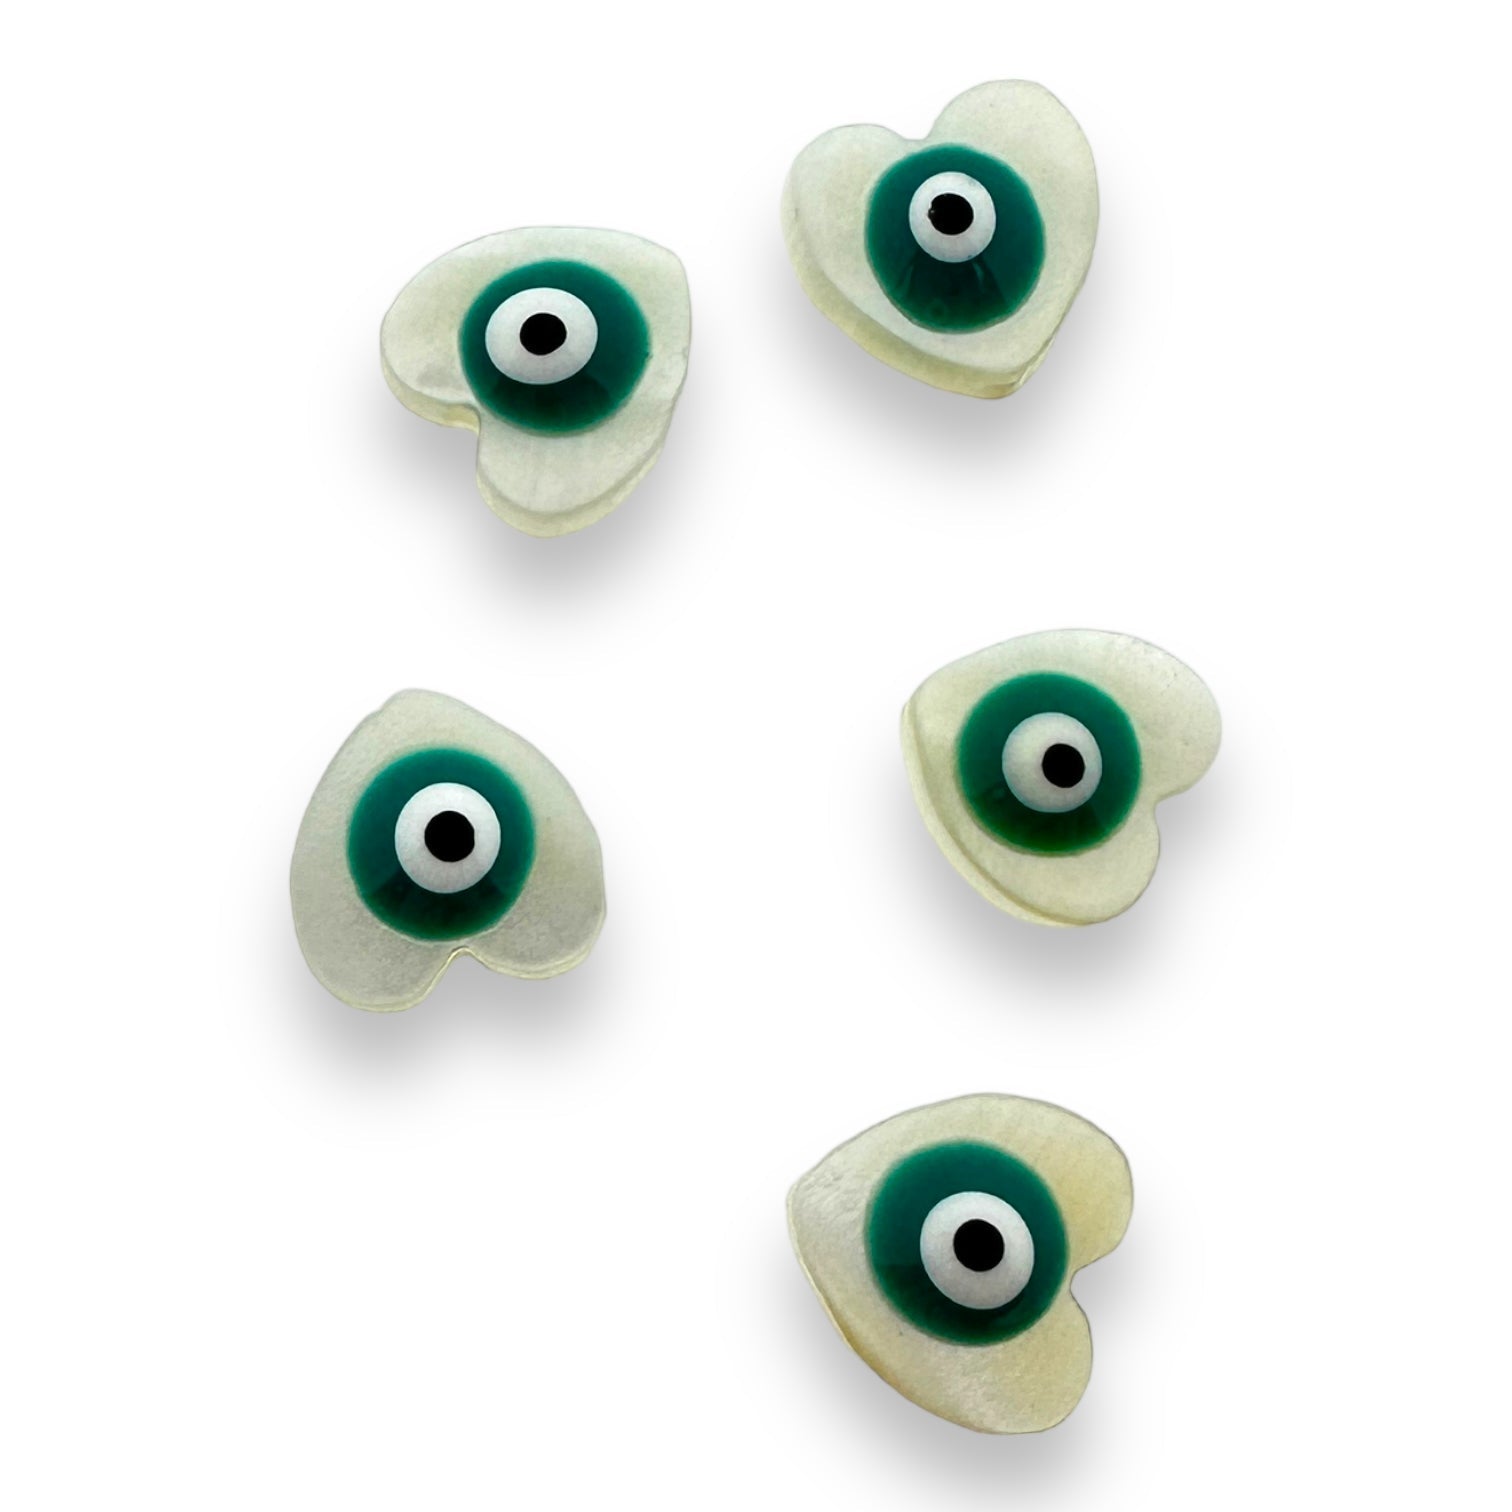 Zoetwaterschelp kraal hartje evil eye turquoise 10mm-Kralen-Kraaltjes van Renate